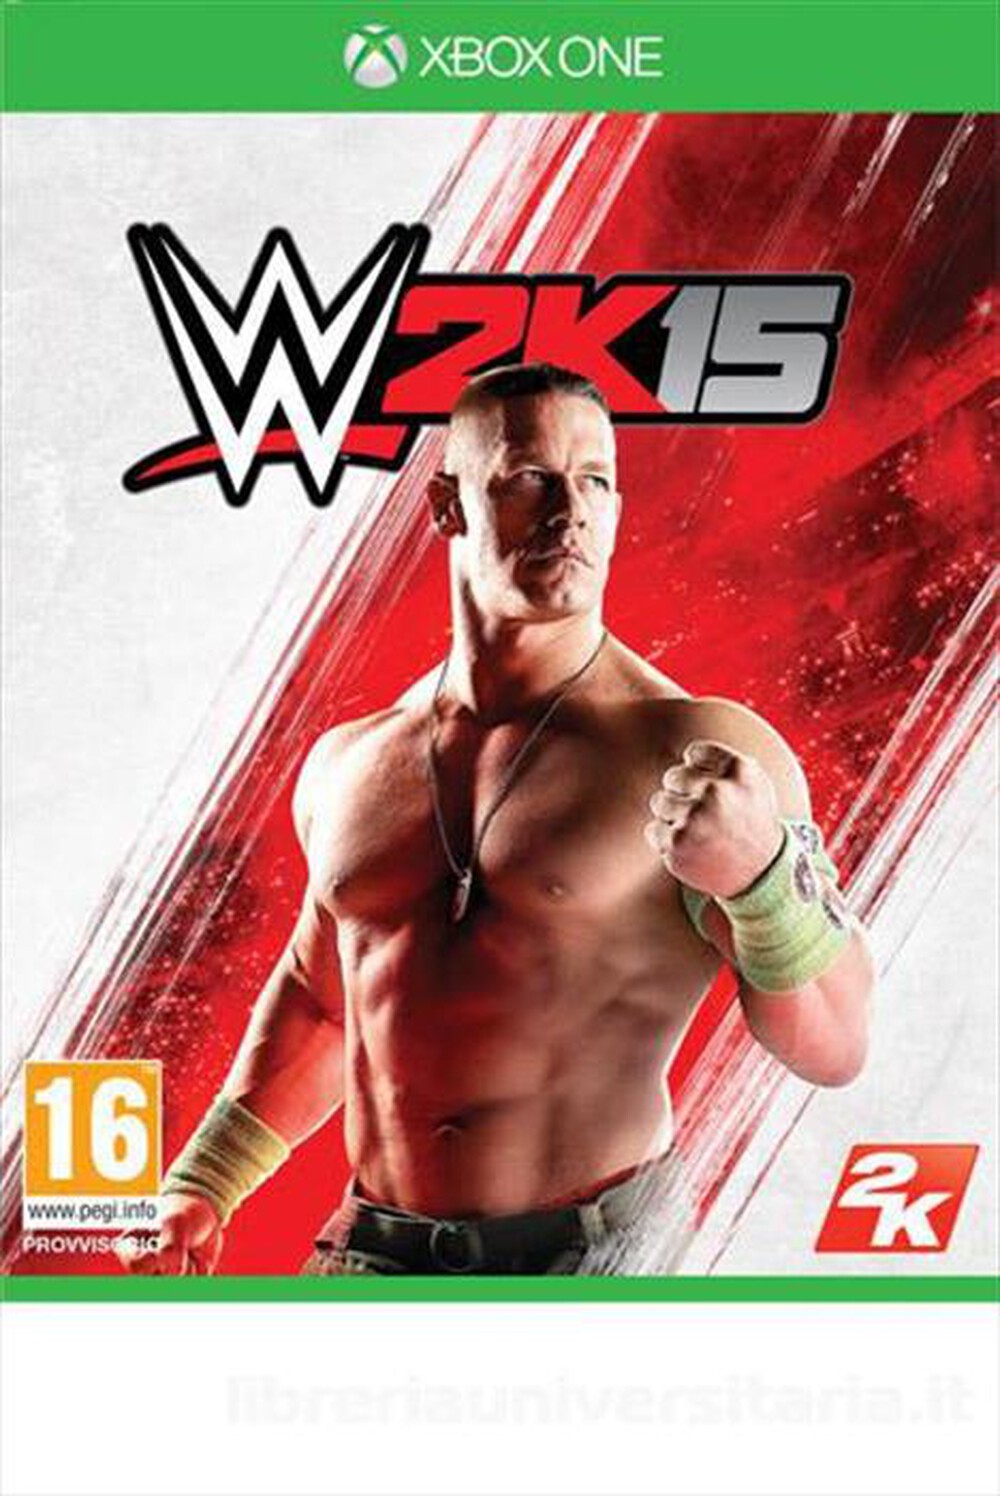 "TAKE TWO - WWE 2K15 Xbox One - "